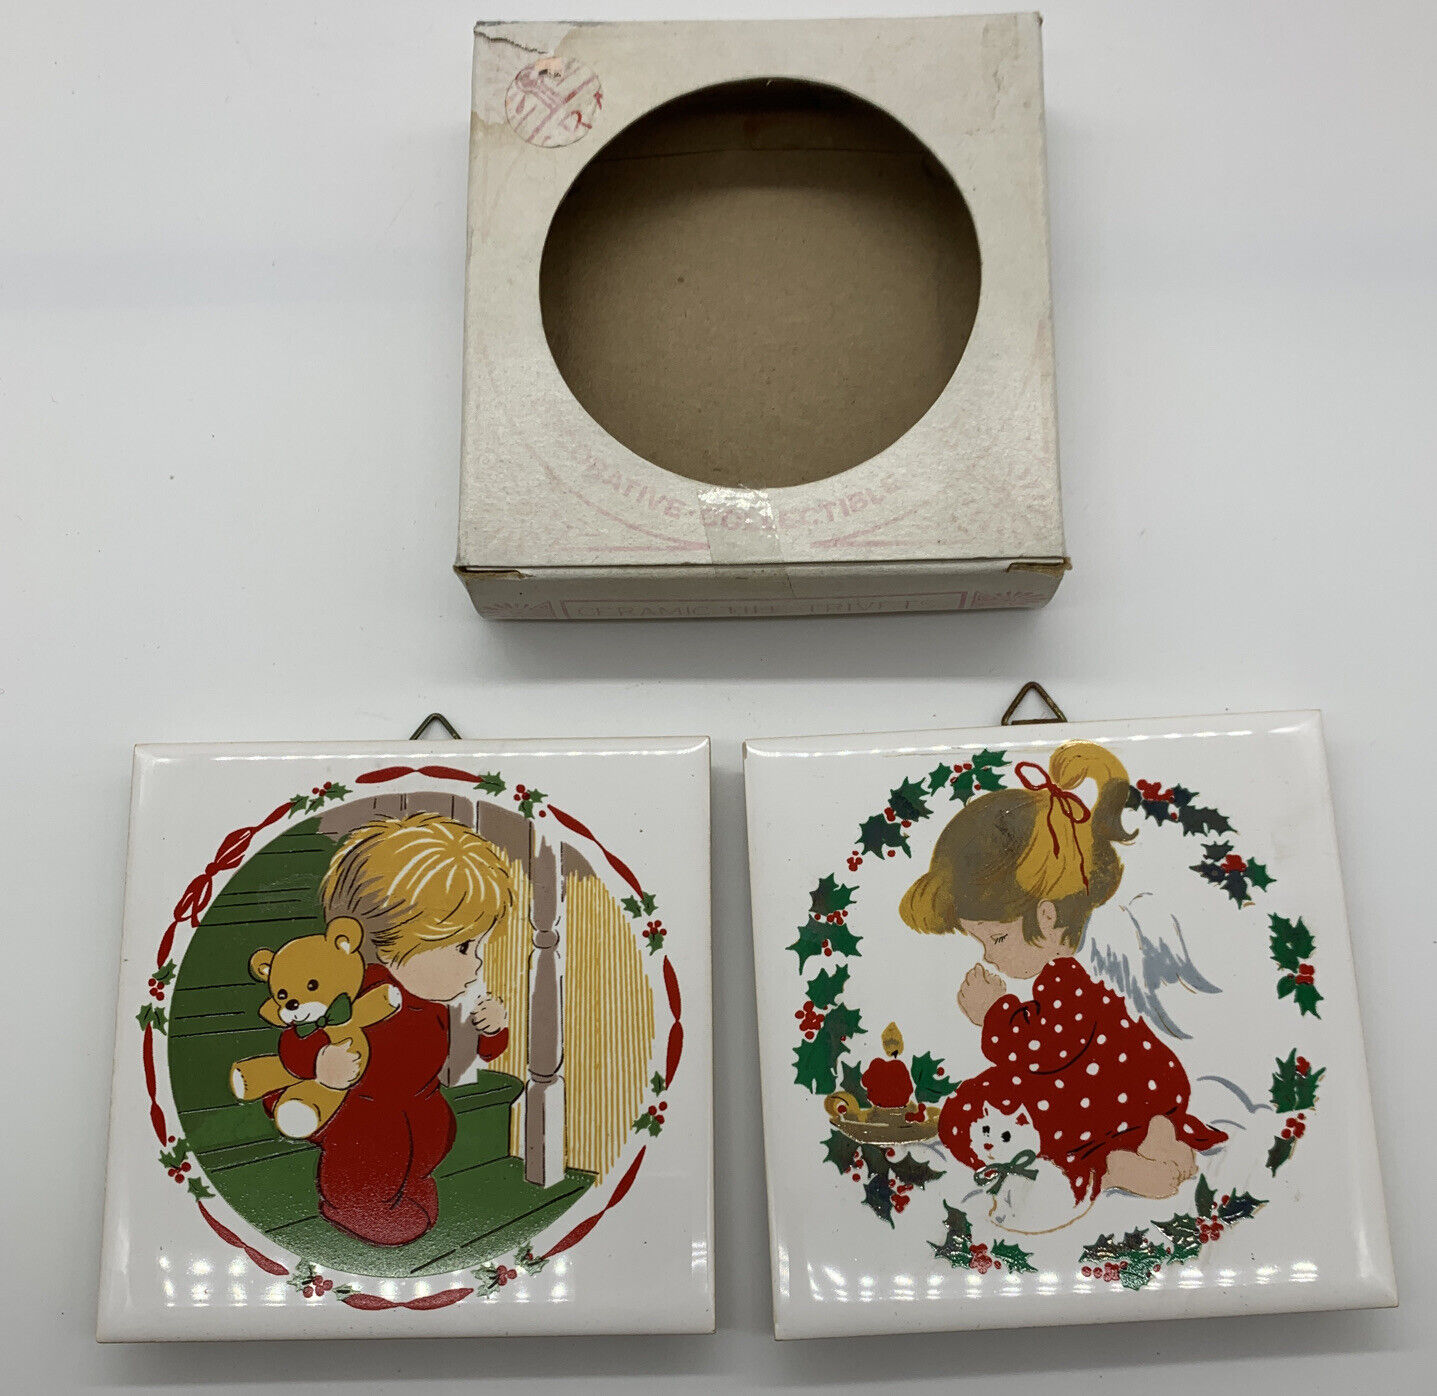 Mail order cheap JASCO Ceramic Tile Finally popular brand Christmas Trivet Girl Going Praying Pair Boy